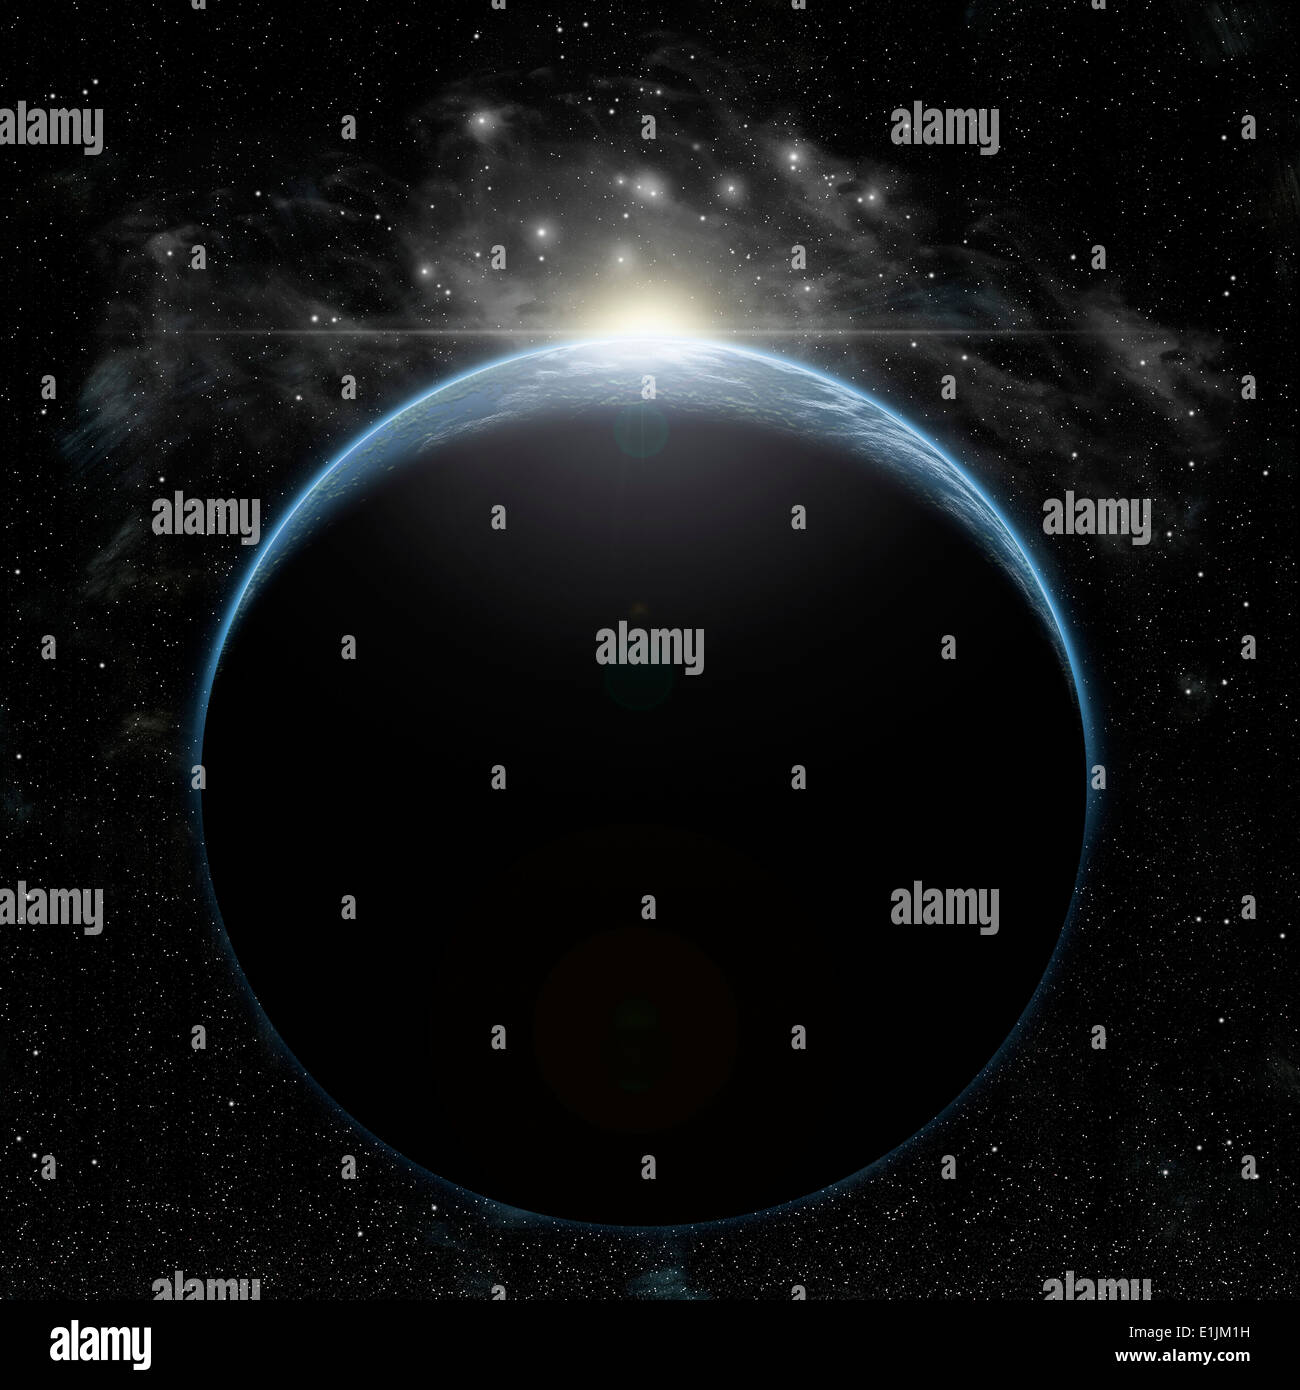 La représentation de l'artiste d'une Planète Terre-like dans l'espace profond avec une étoile dans une nébuleuse proche briser l'horizon. Banque D'Images